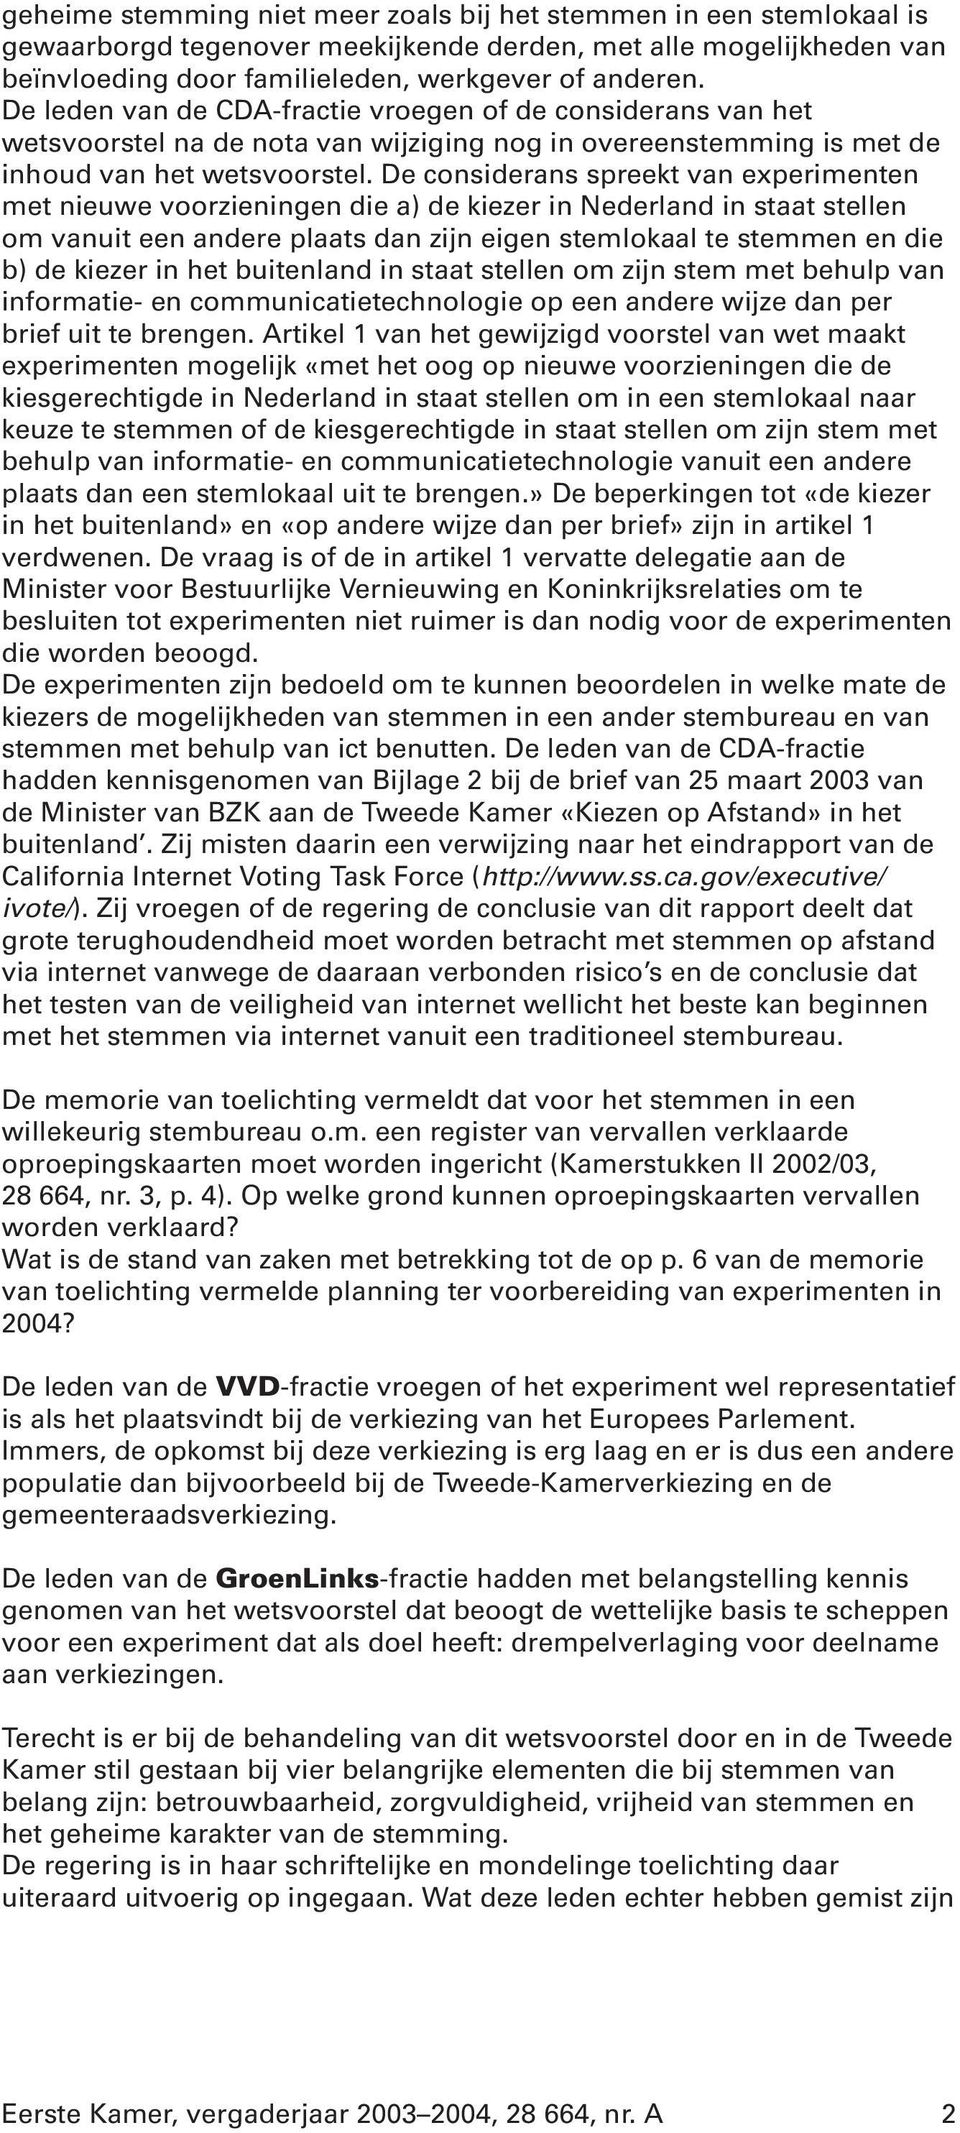 De considerans spreekt van experimenten met nieuwe voorzieningen die a) de kiezer in Nederland in staat stellen om vanuit een andere plaats dan zijn eigen stemlokaal te stemmen en die b) de kiezer in